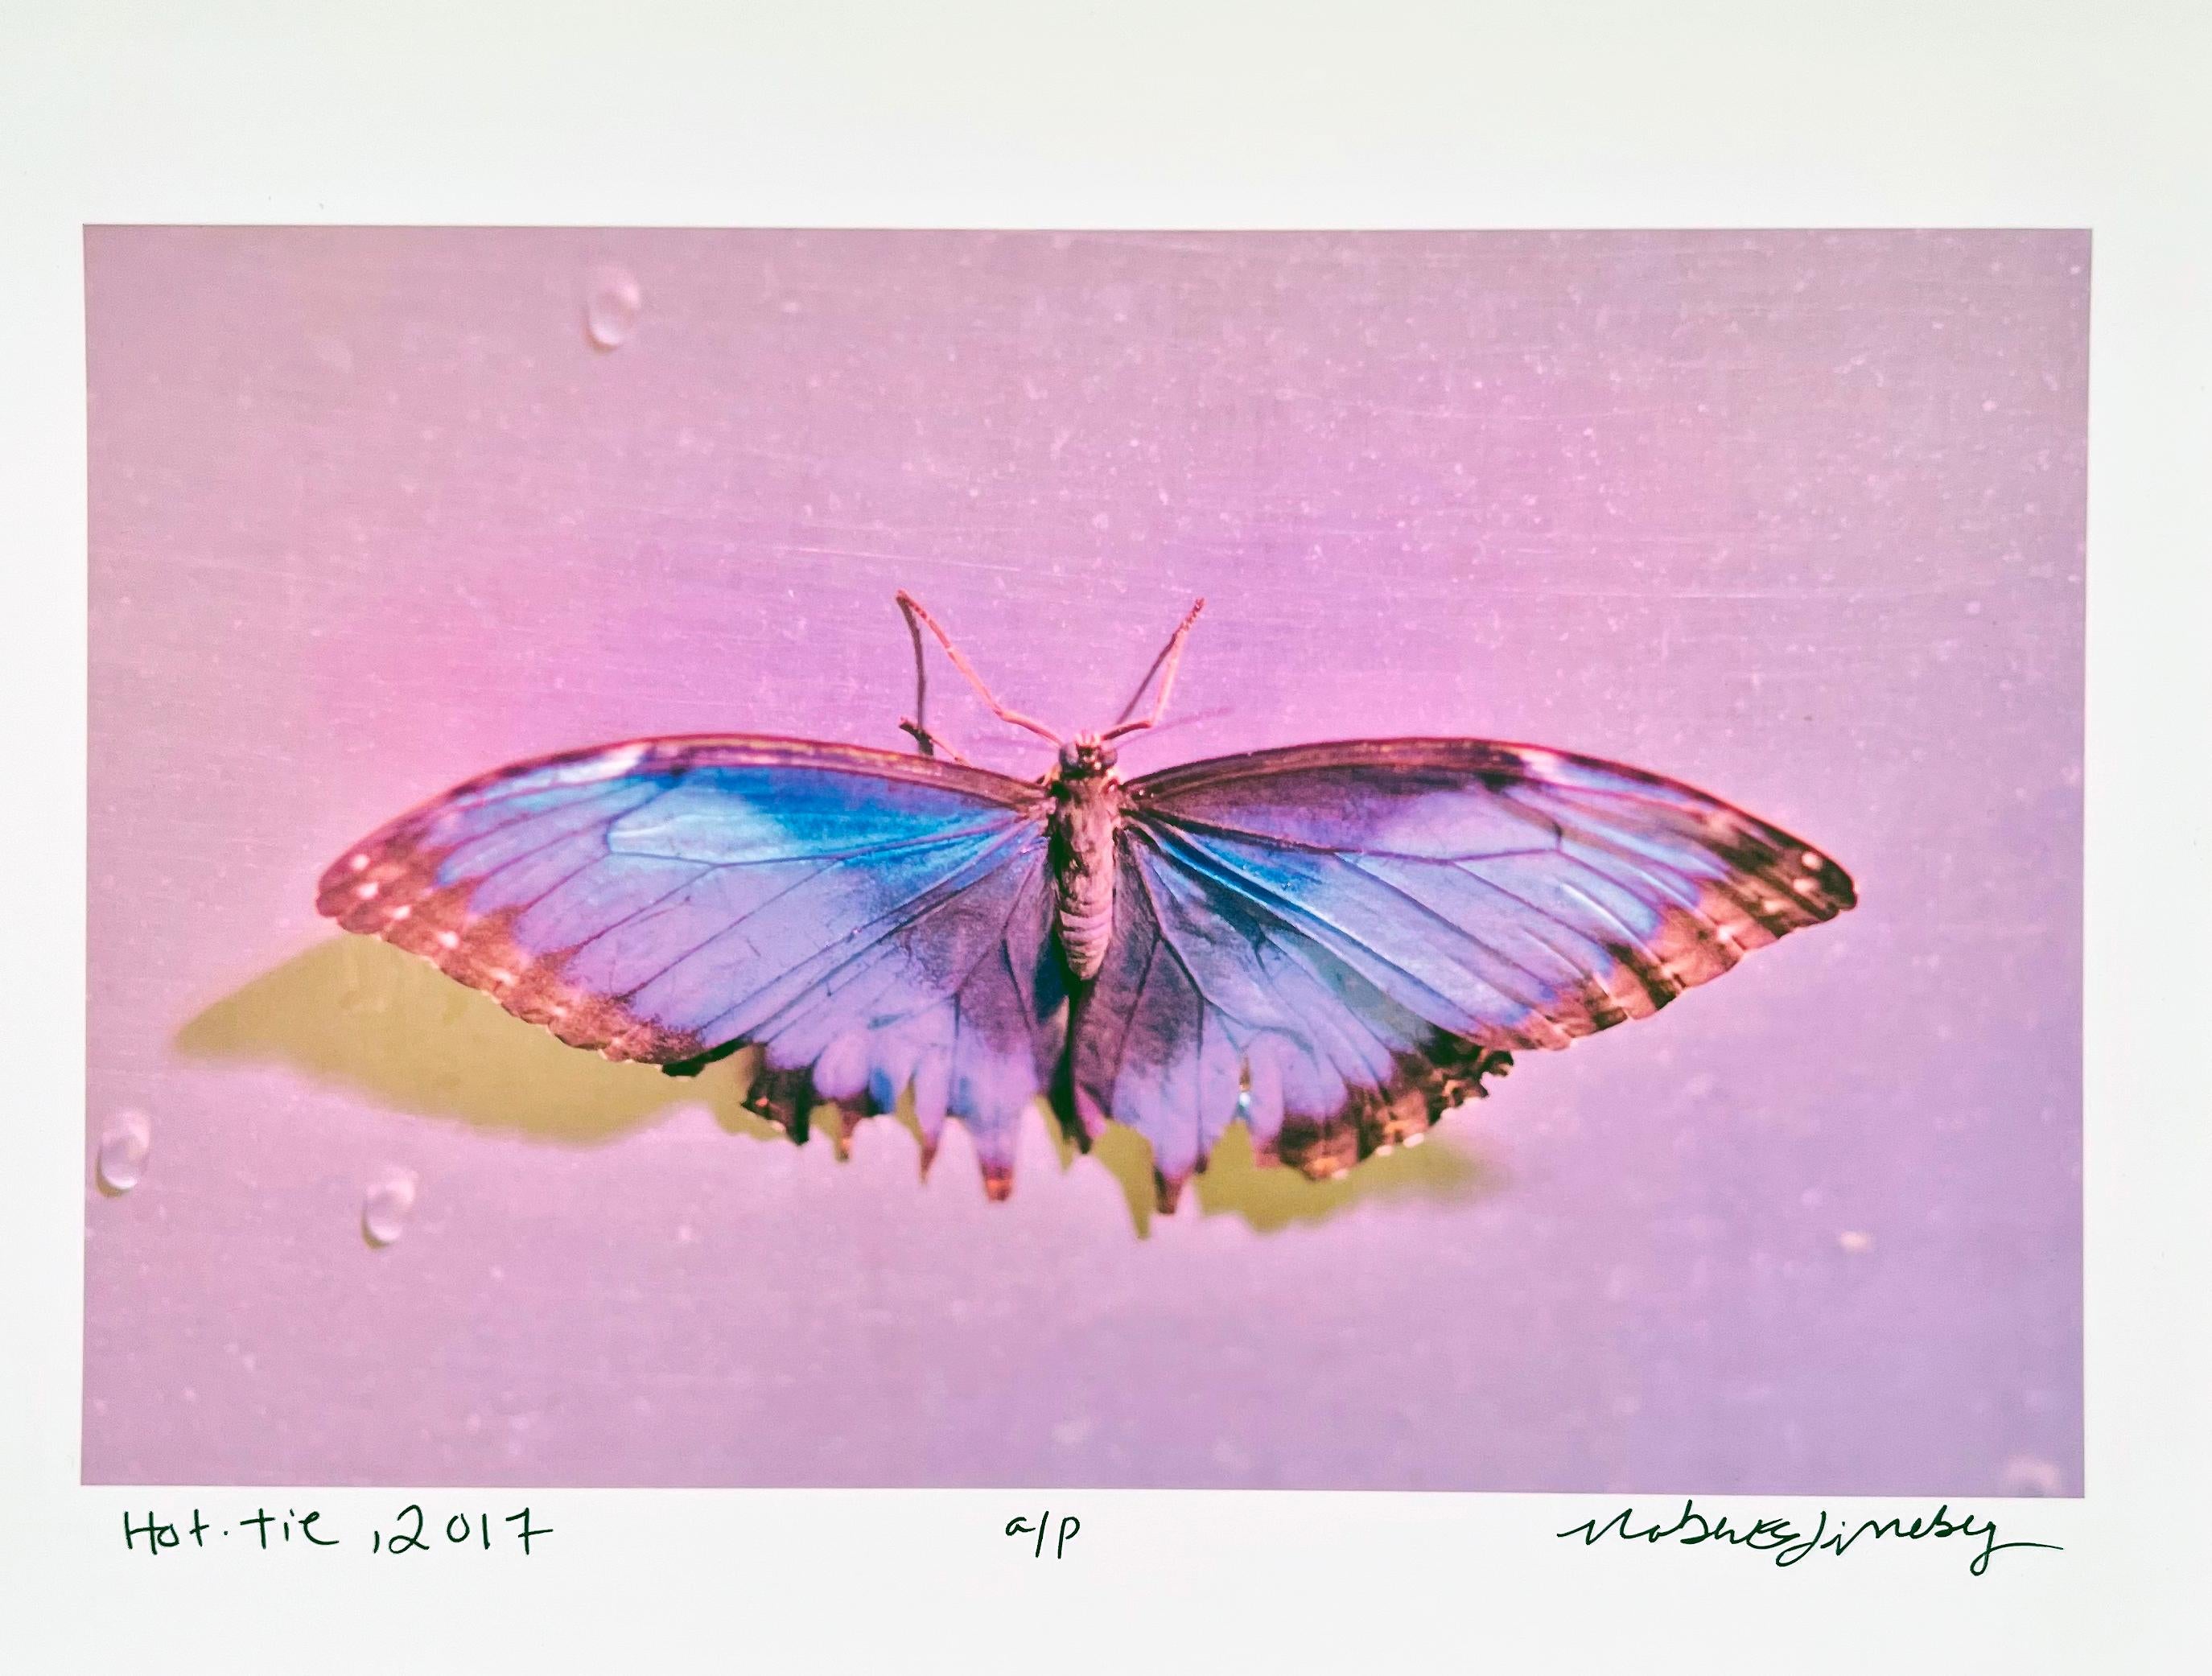 Hottie, Photographie contemporaine de papillons, Petites œuvres